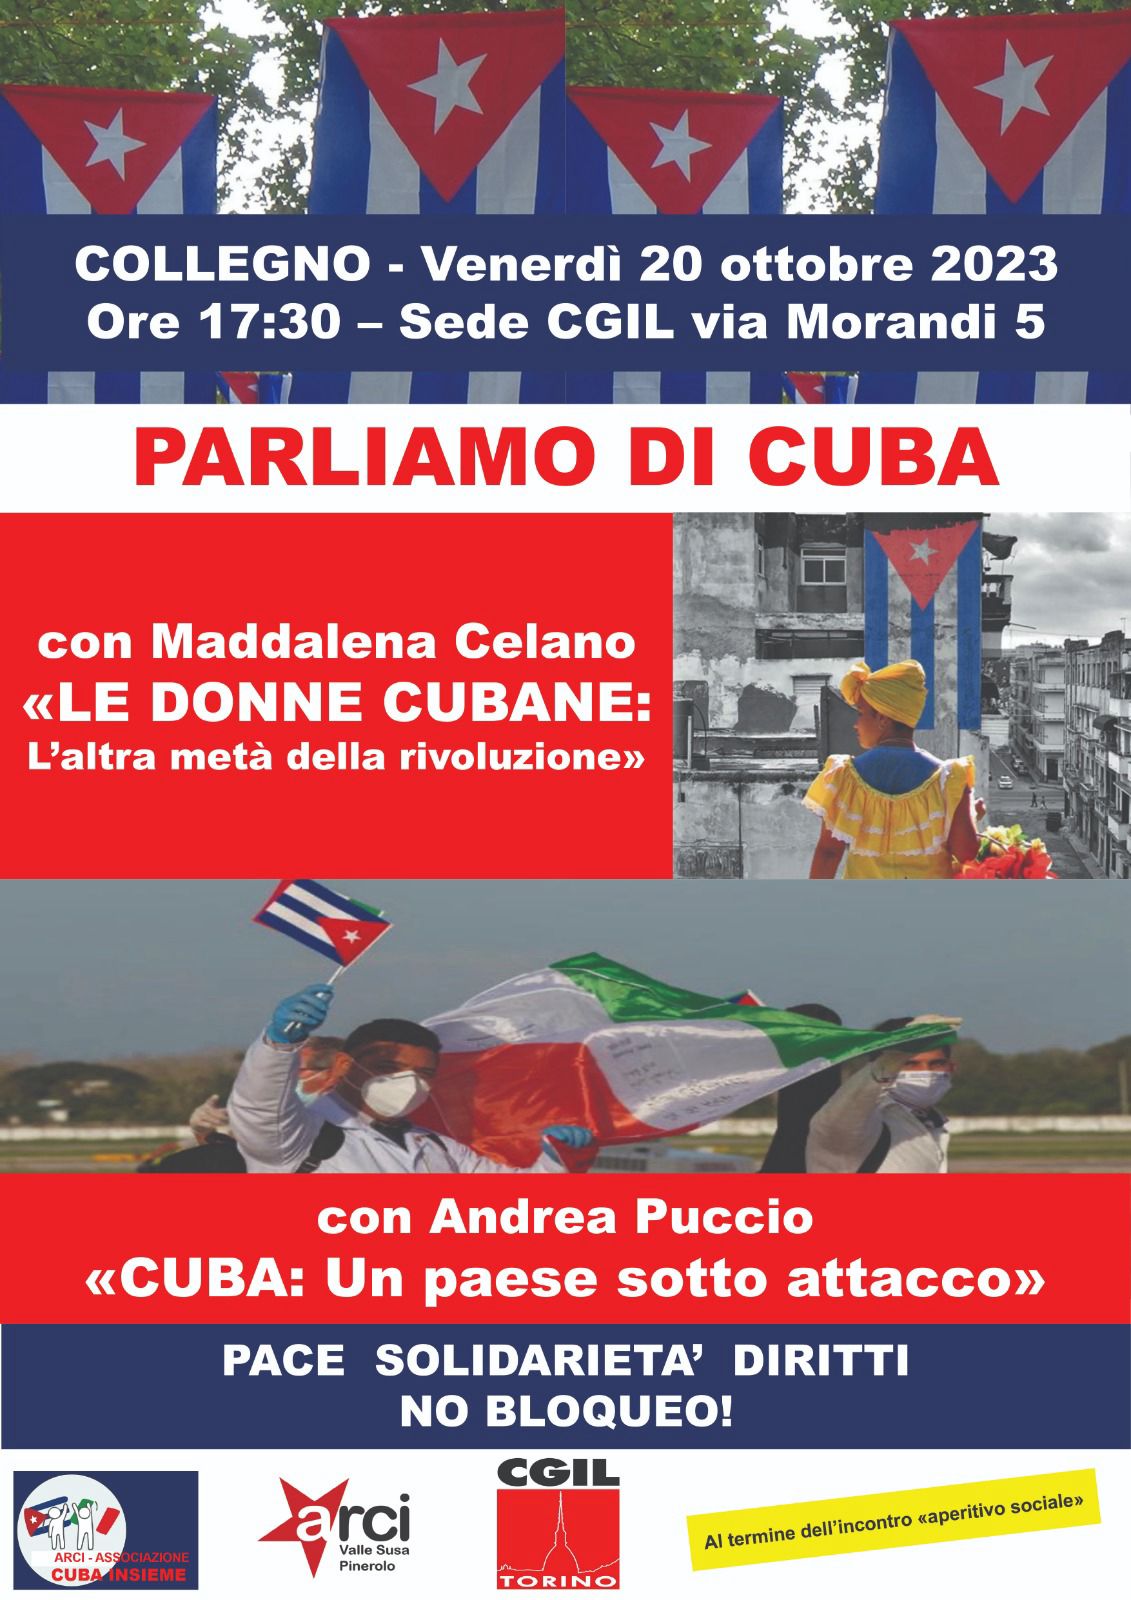 Parliamo di Cuba - Collegno, 20 ottobre 2023